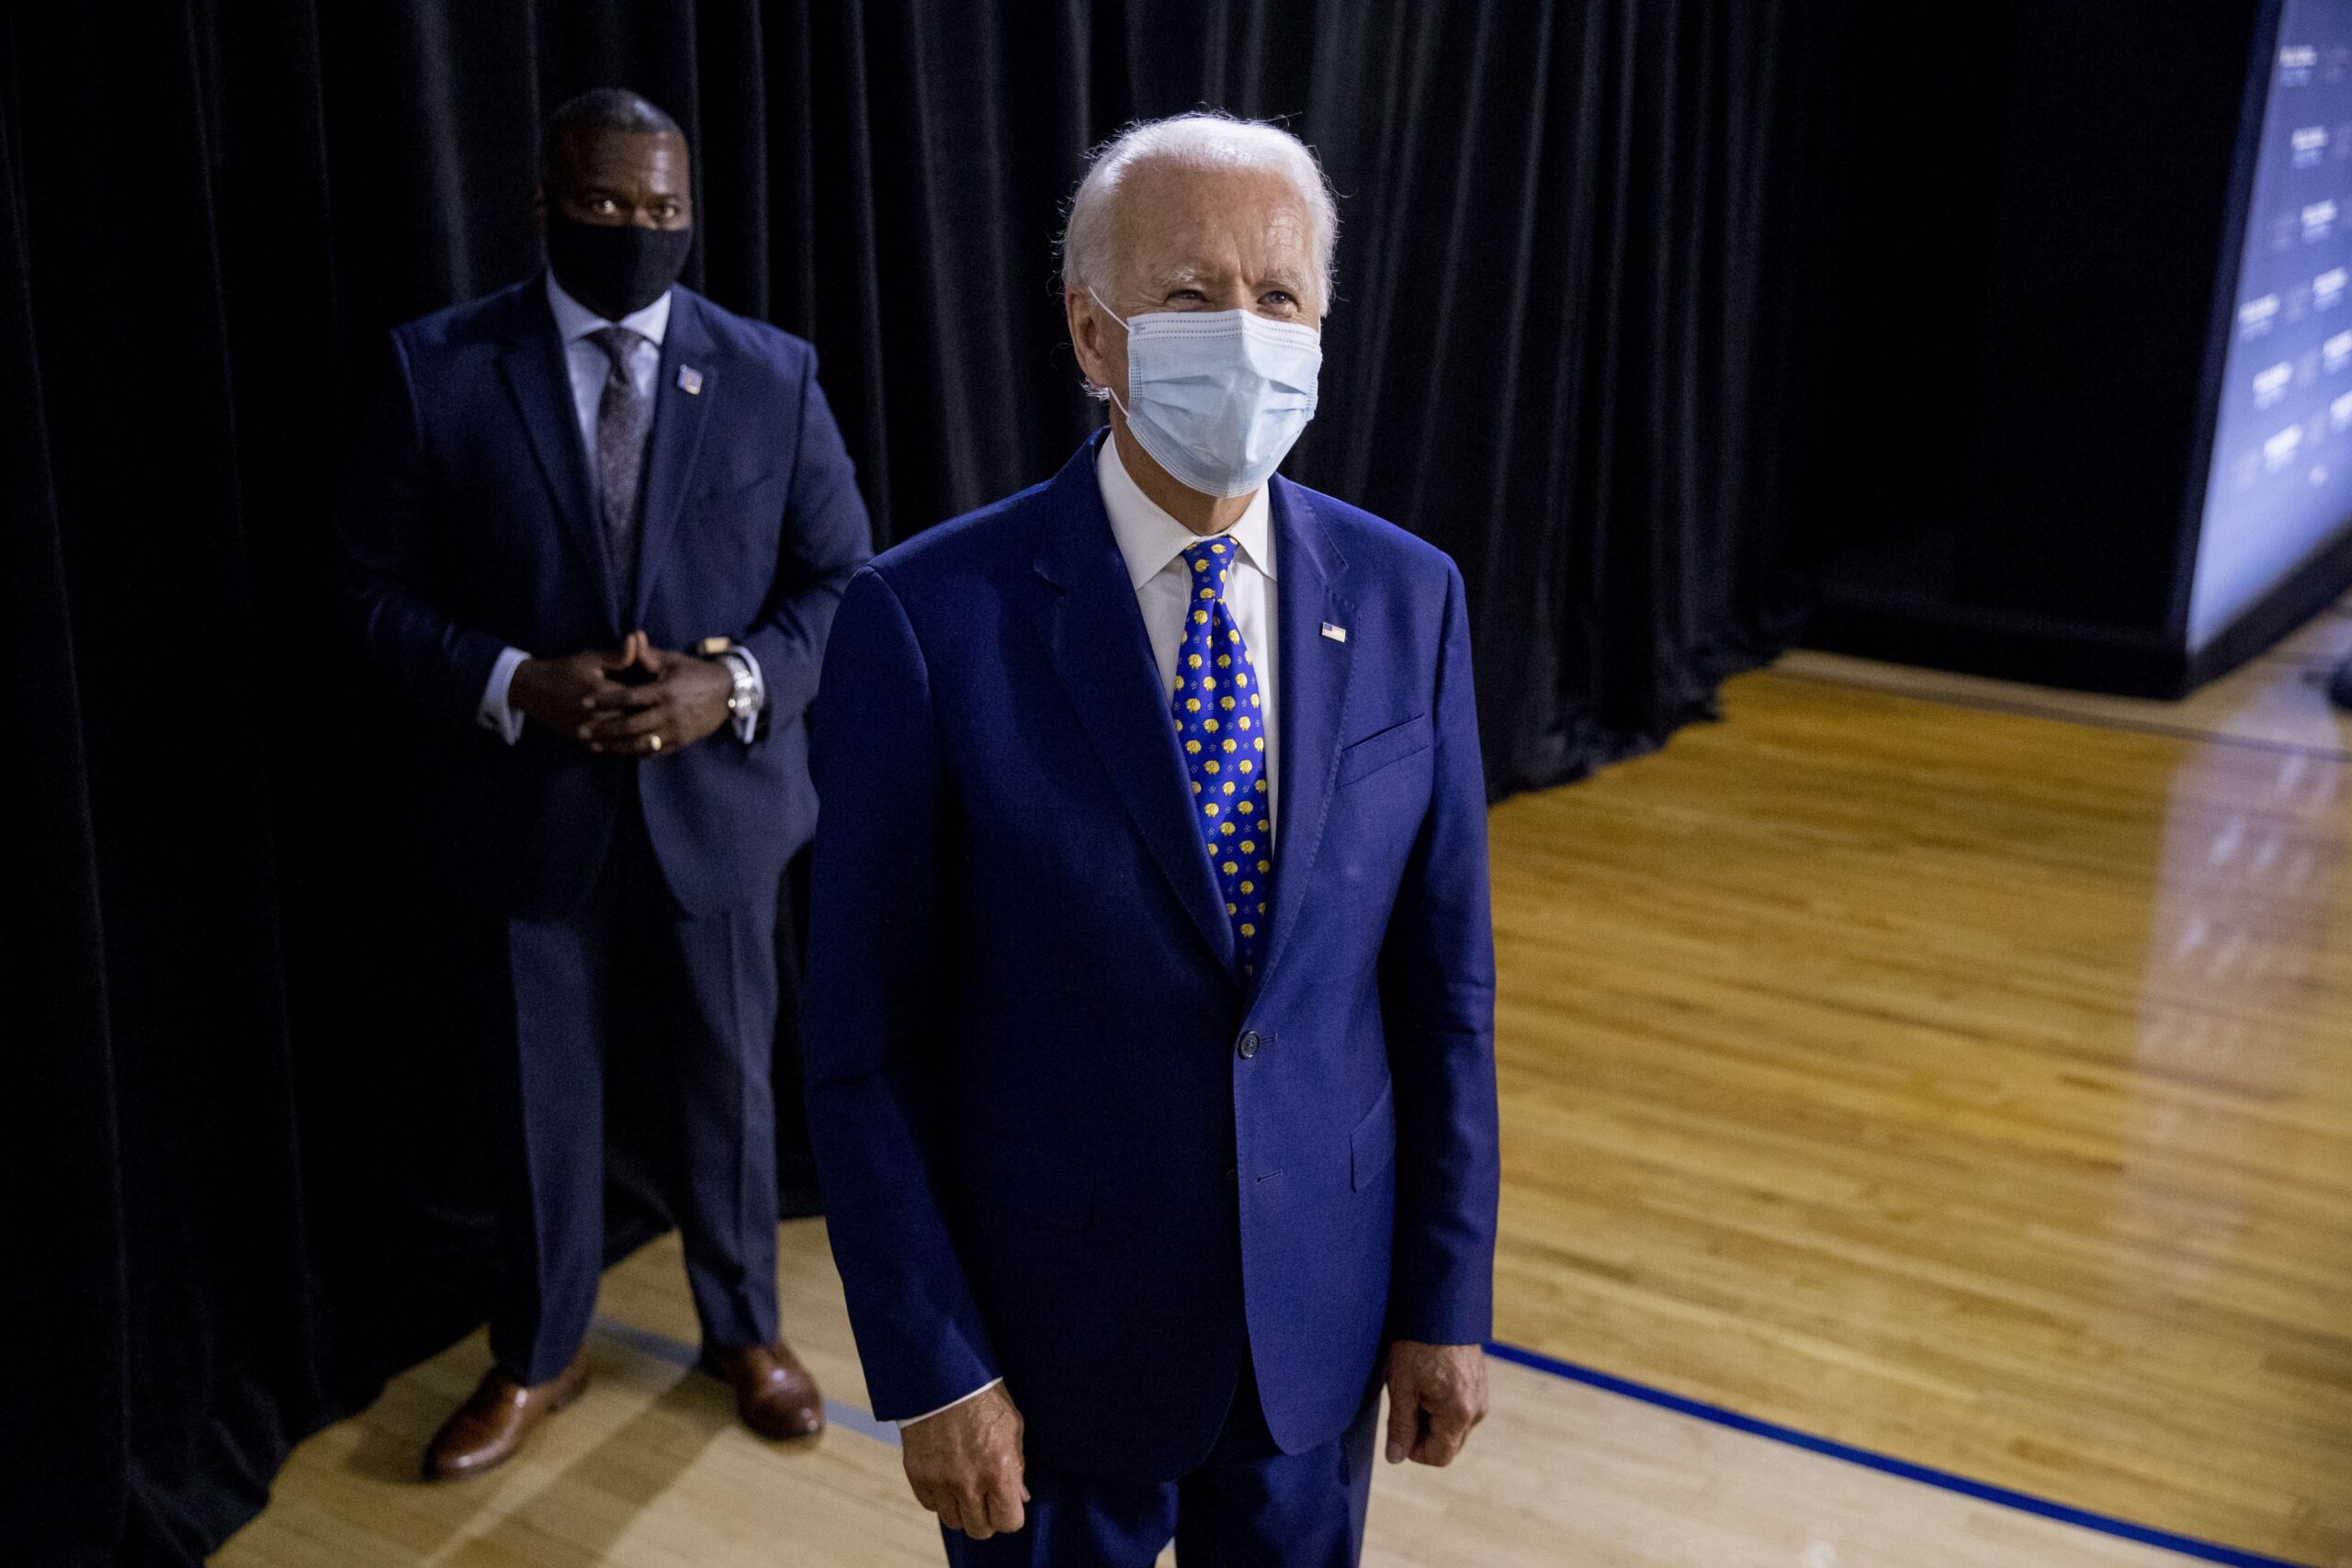 Joe Biden wearing a mask.